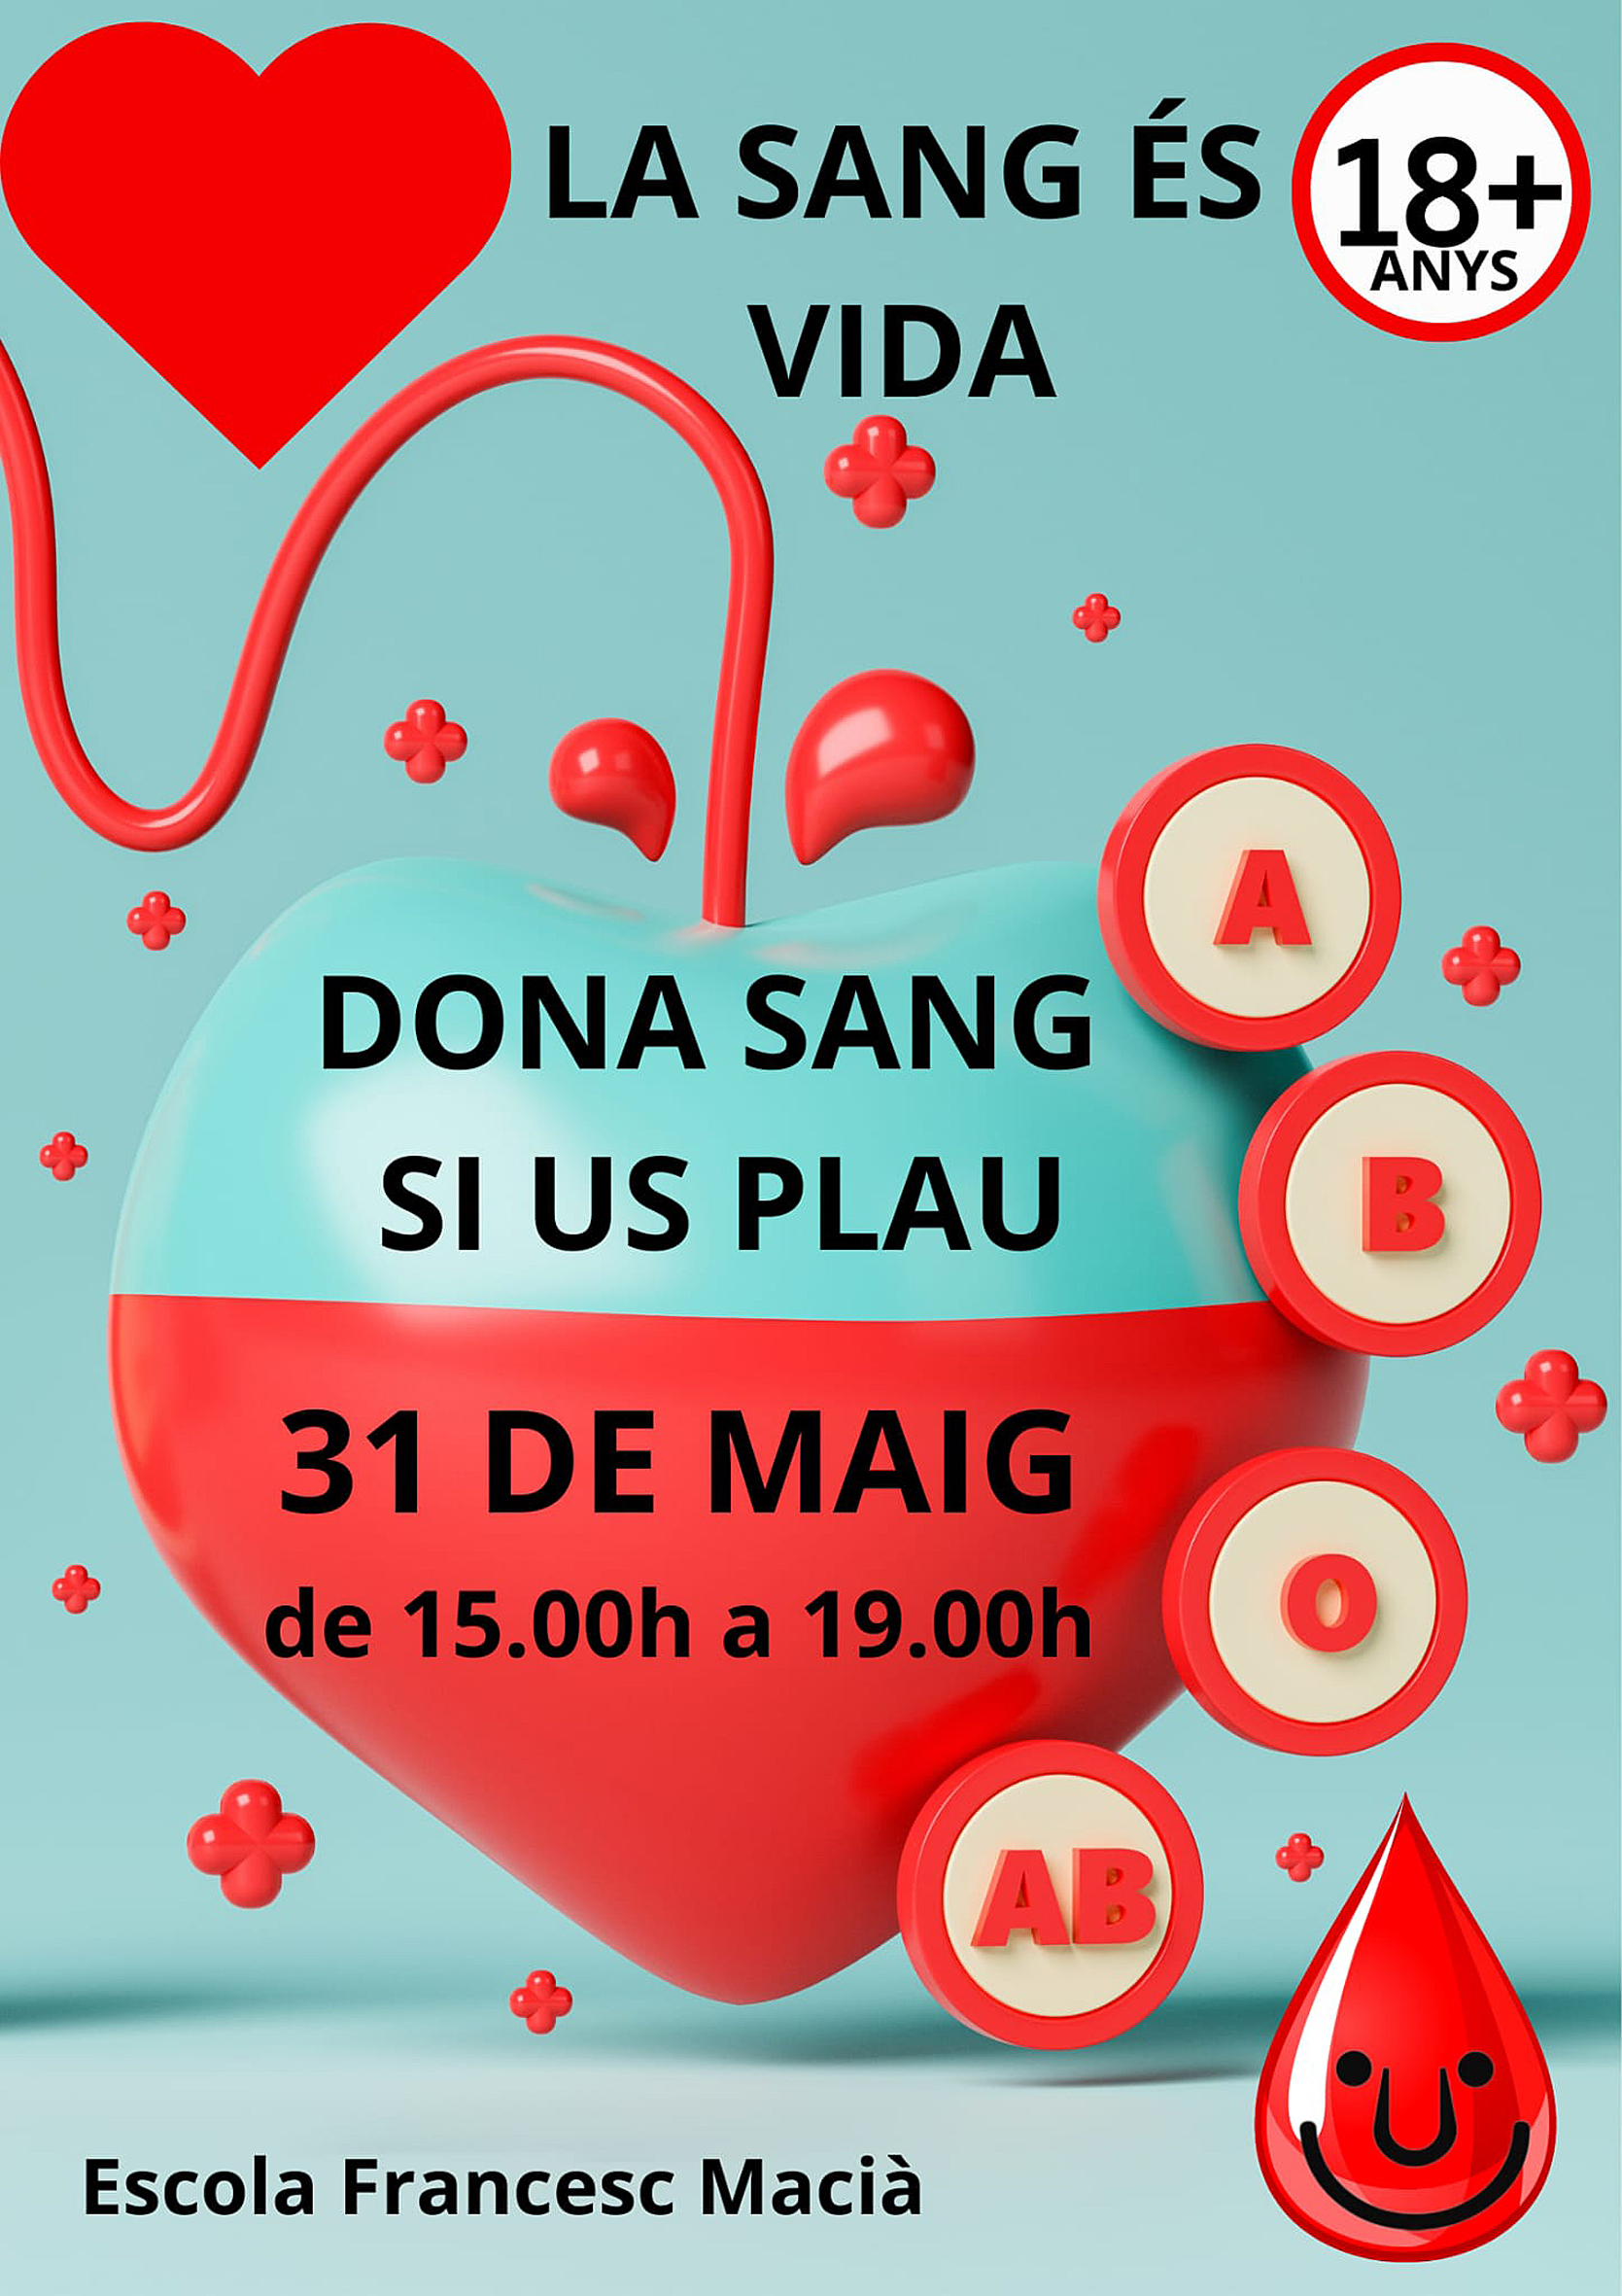 Cartell de la jornada de donació de sang a l'Escola Francesc Macià - Dimecres 31 de maig.